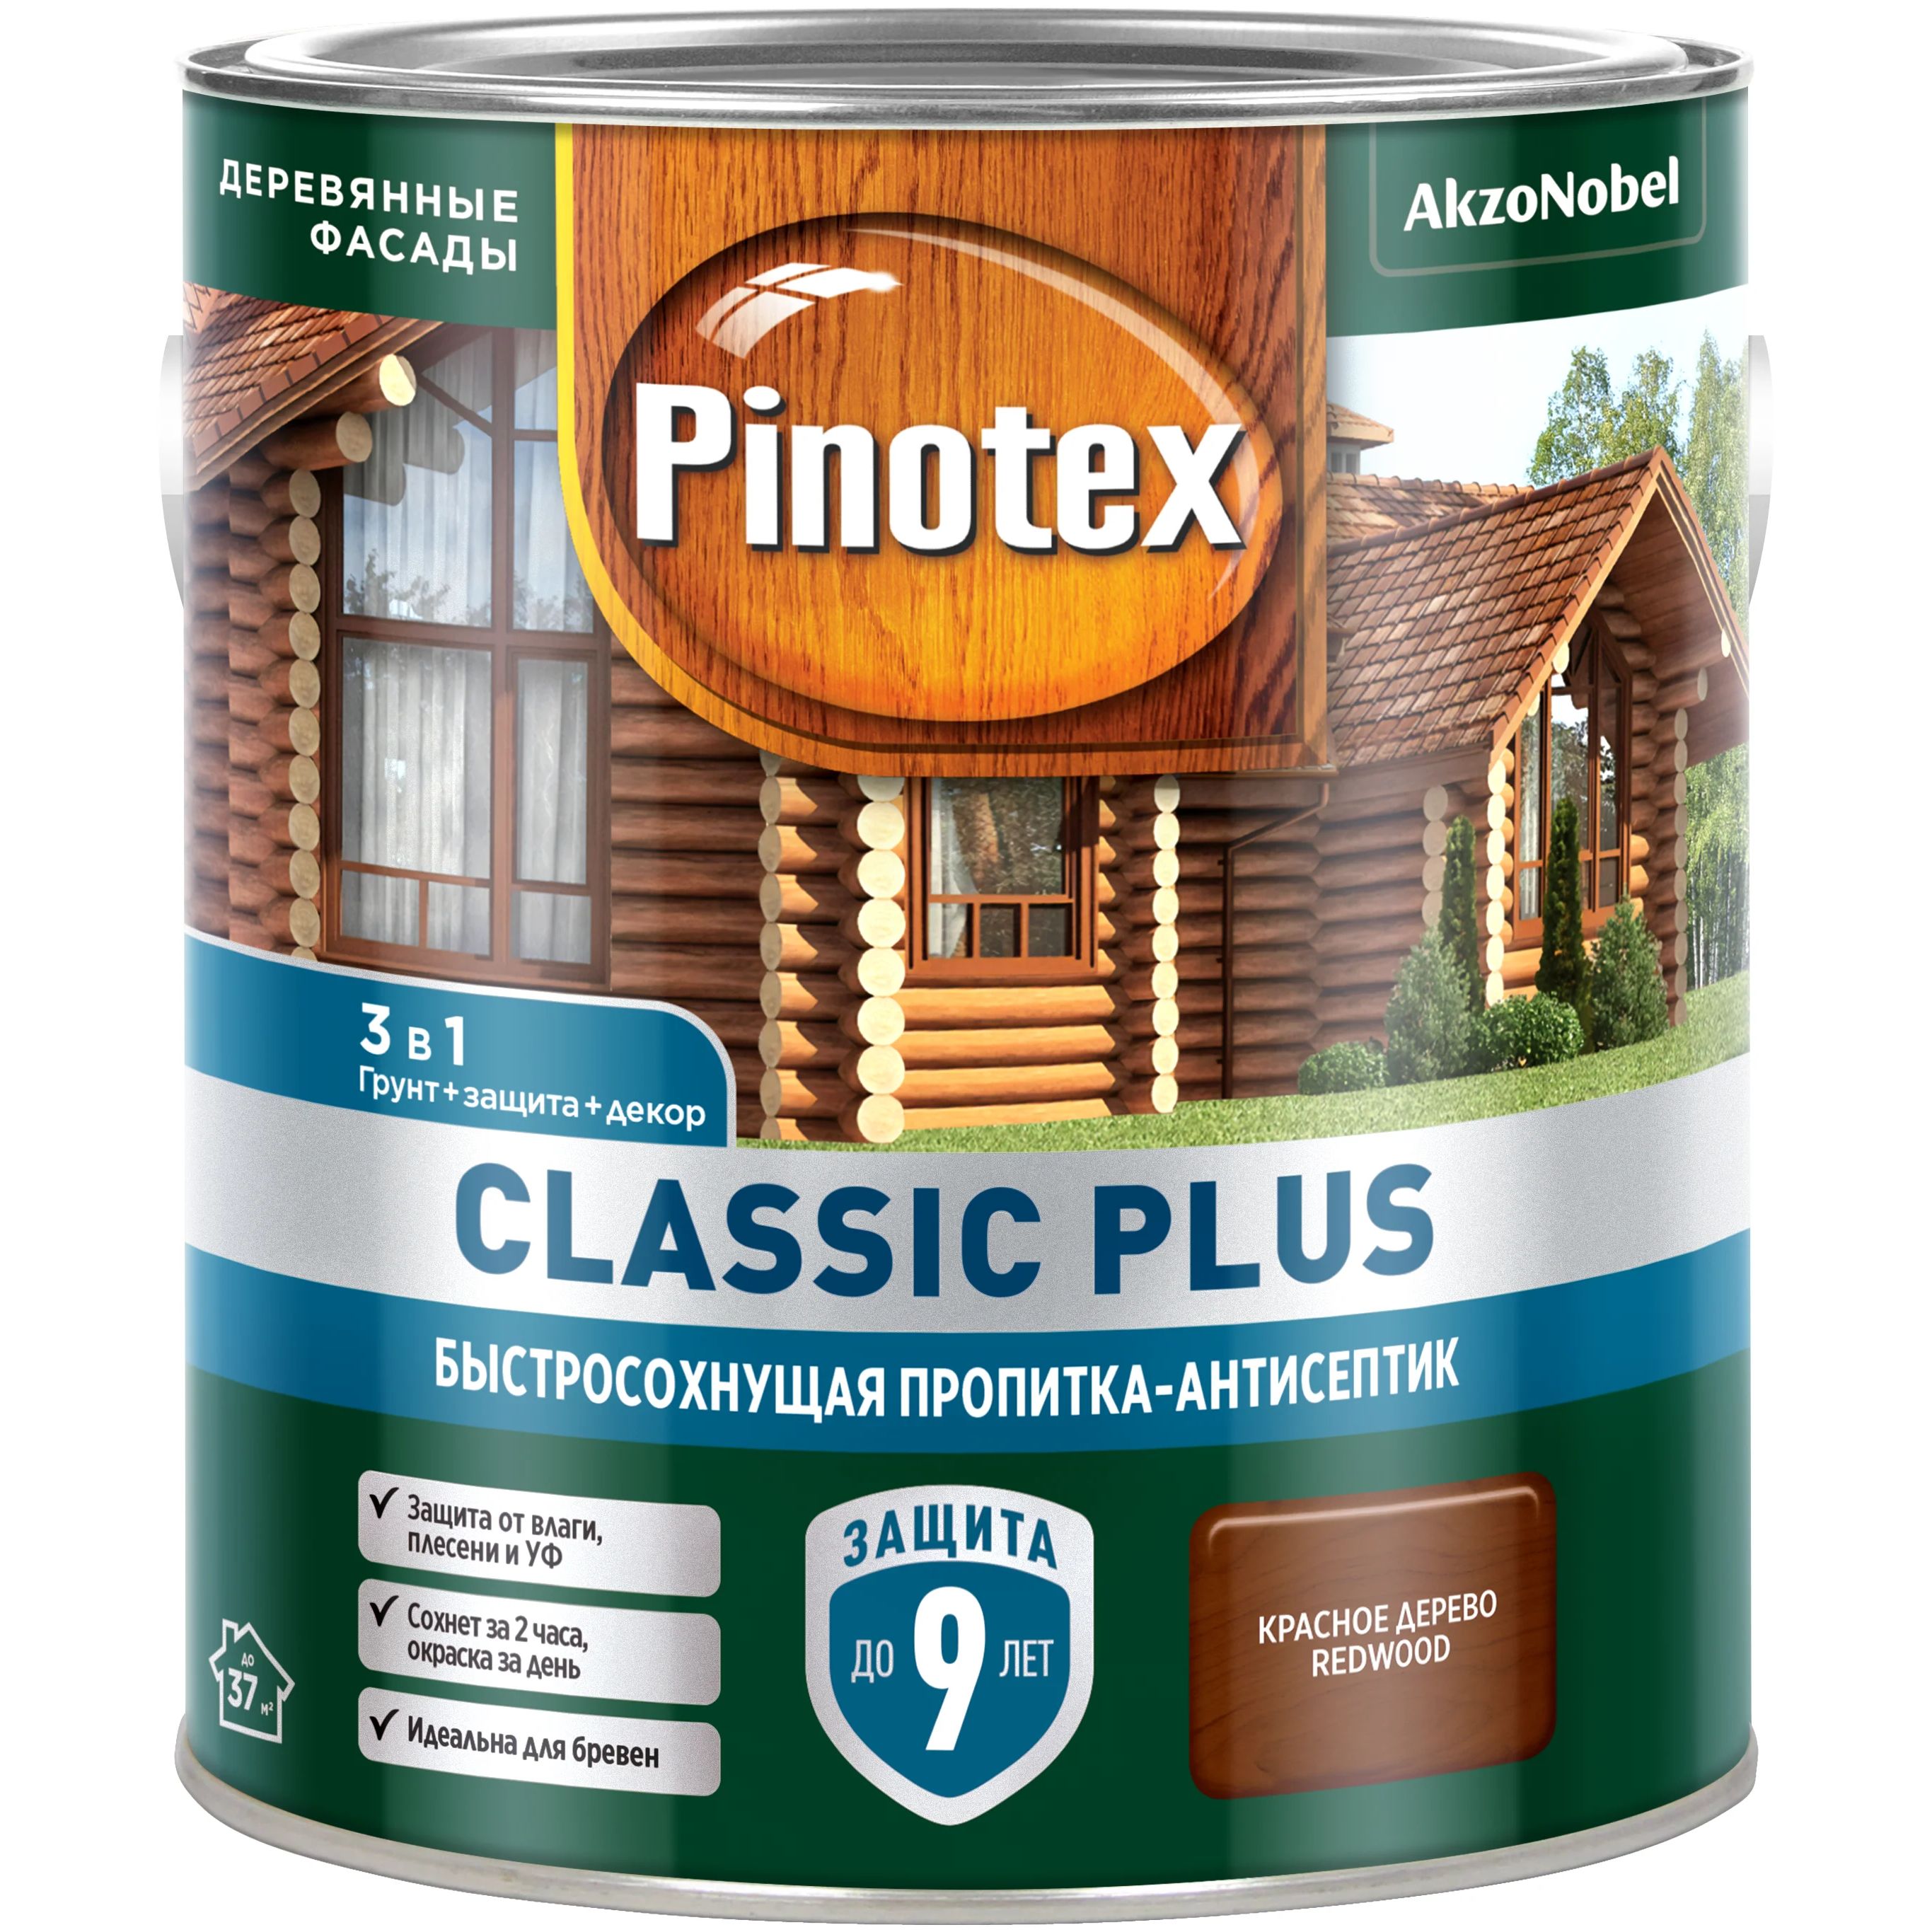 Пропитка-антисептик Pinotex Classic Plus 3 в 1, быстросохнущая,красное дерево, 2,5 л пропитка антисептик pinotex classic plus 3 в 1 быстросохнущая тиковое дерево 900 мл